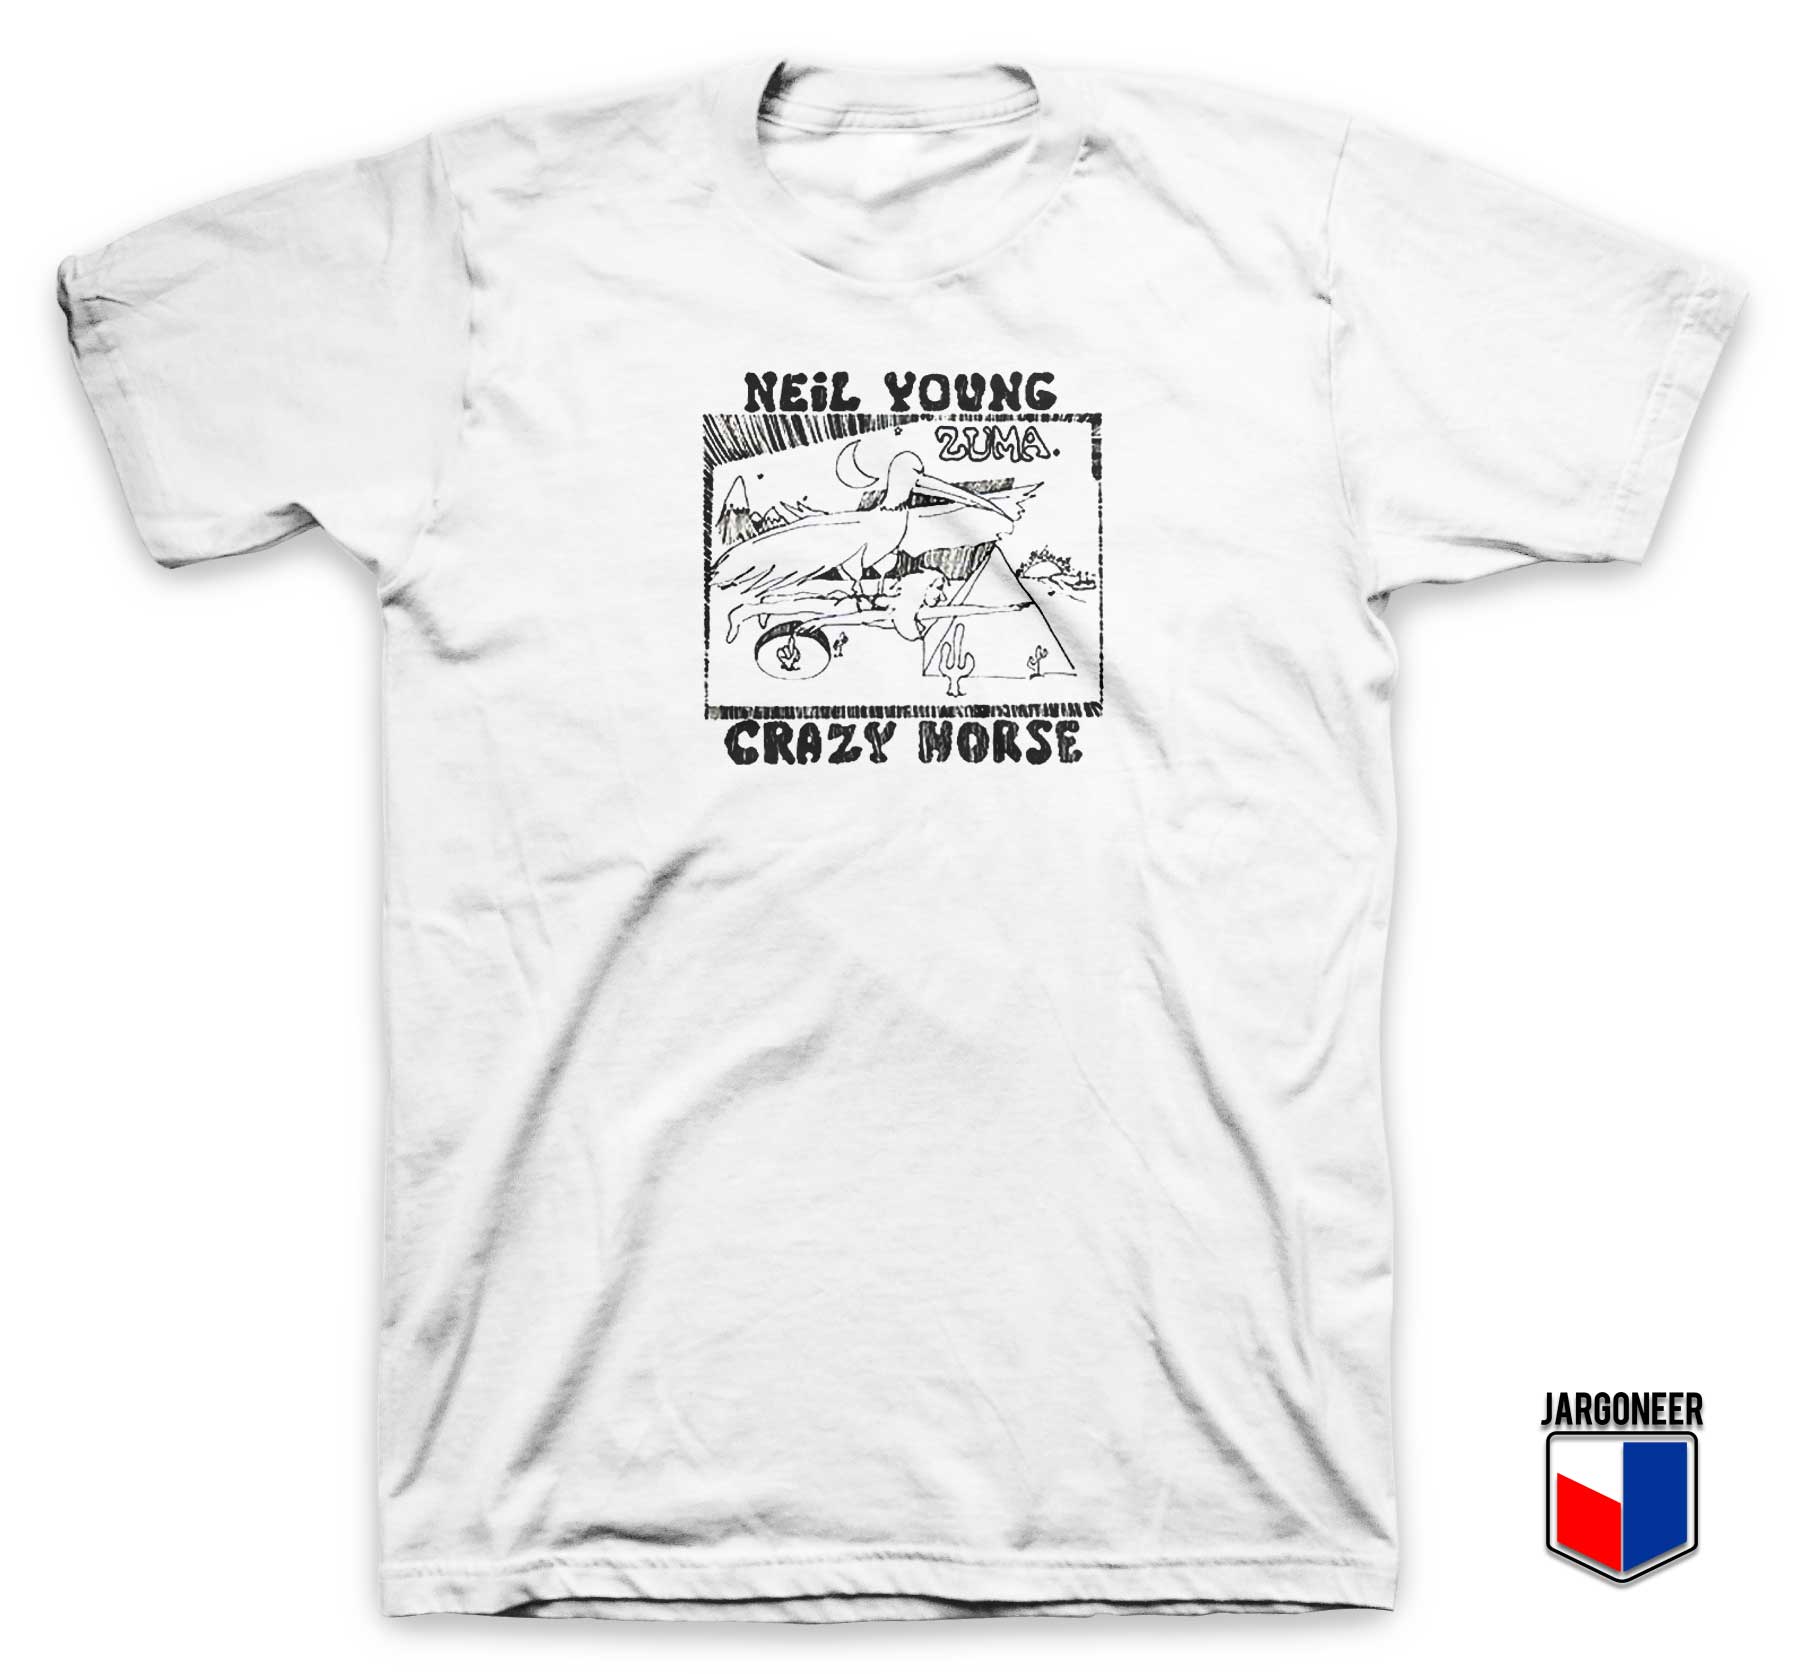 Neil Young Crazy Horse T Shirt - Shop Unique Graphic Cool Shirt Designs